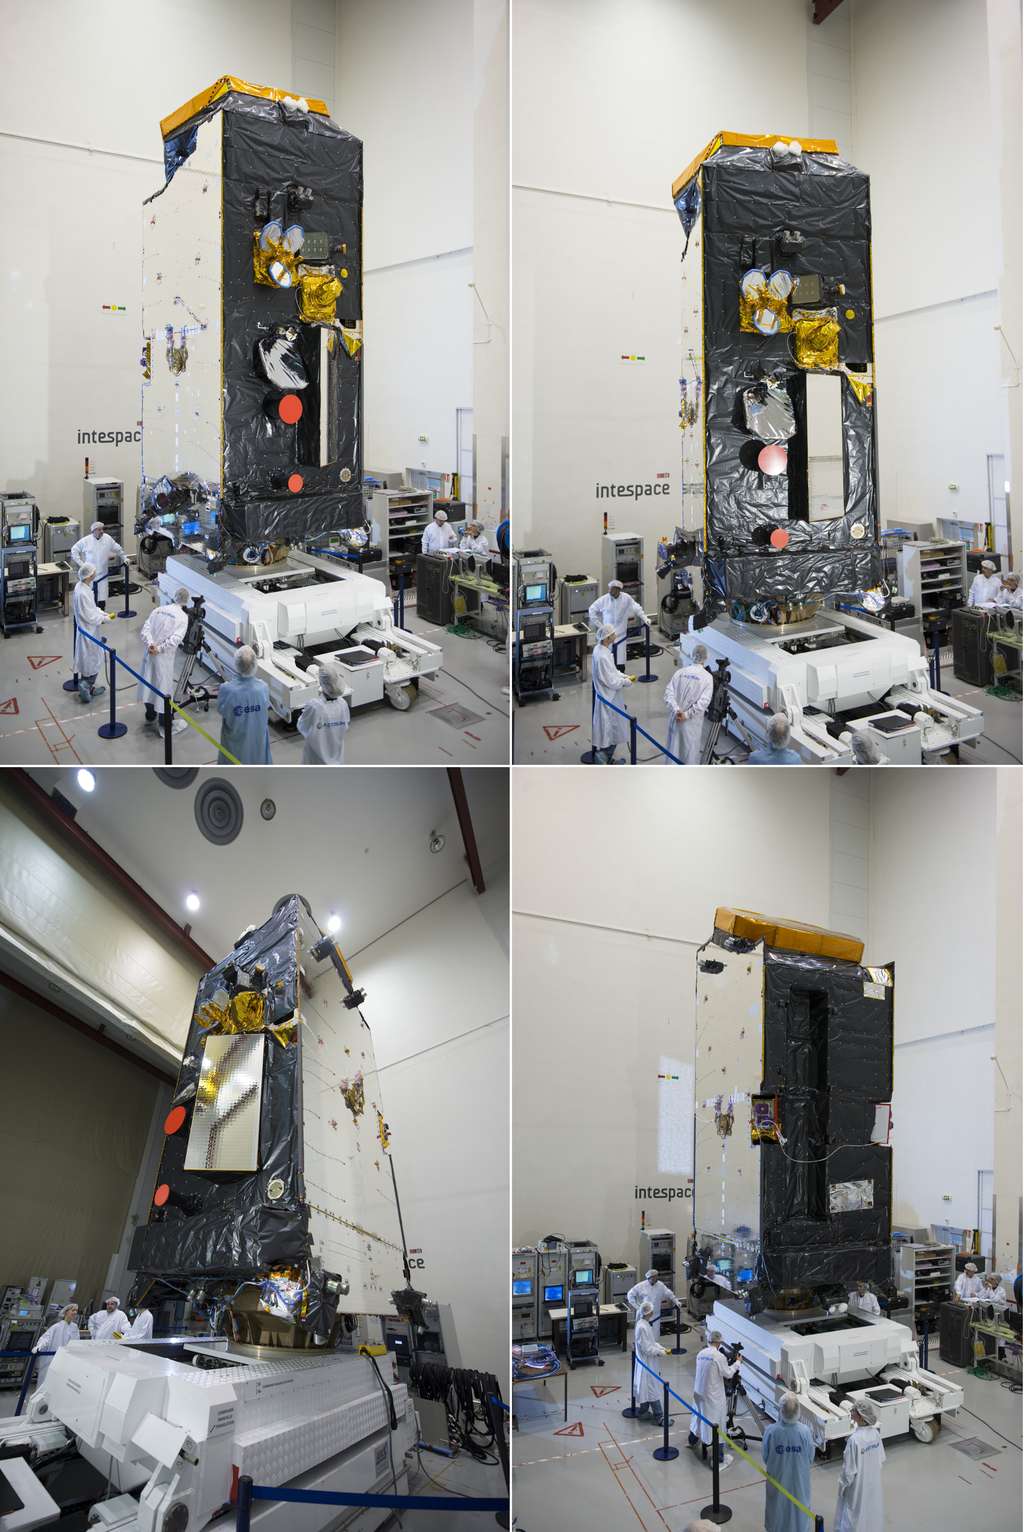 Le satellite Alphasat, sans ses panneaux solaires et sa grande antenne, dans les locaux d’Intespace pour y subir ses essais de performances radiofréquences en chambre anéchoïque (mars 2013). © S. Corvaja, Esa